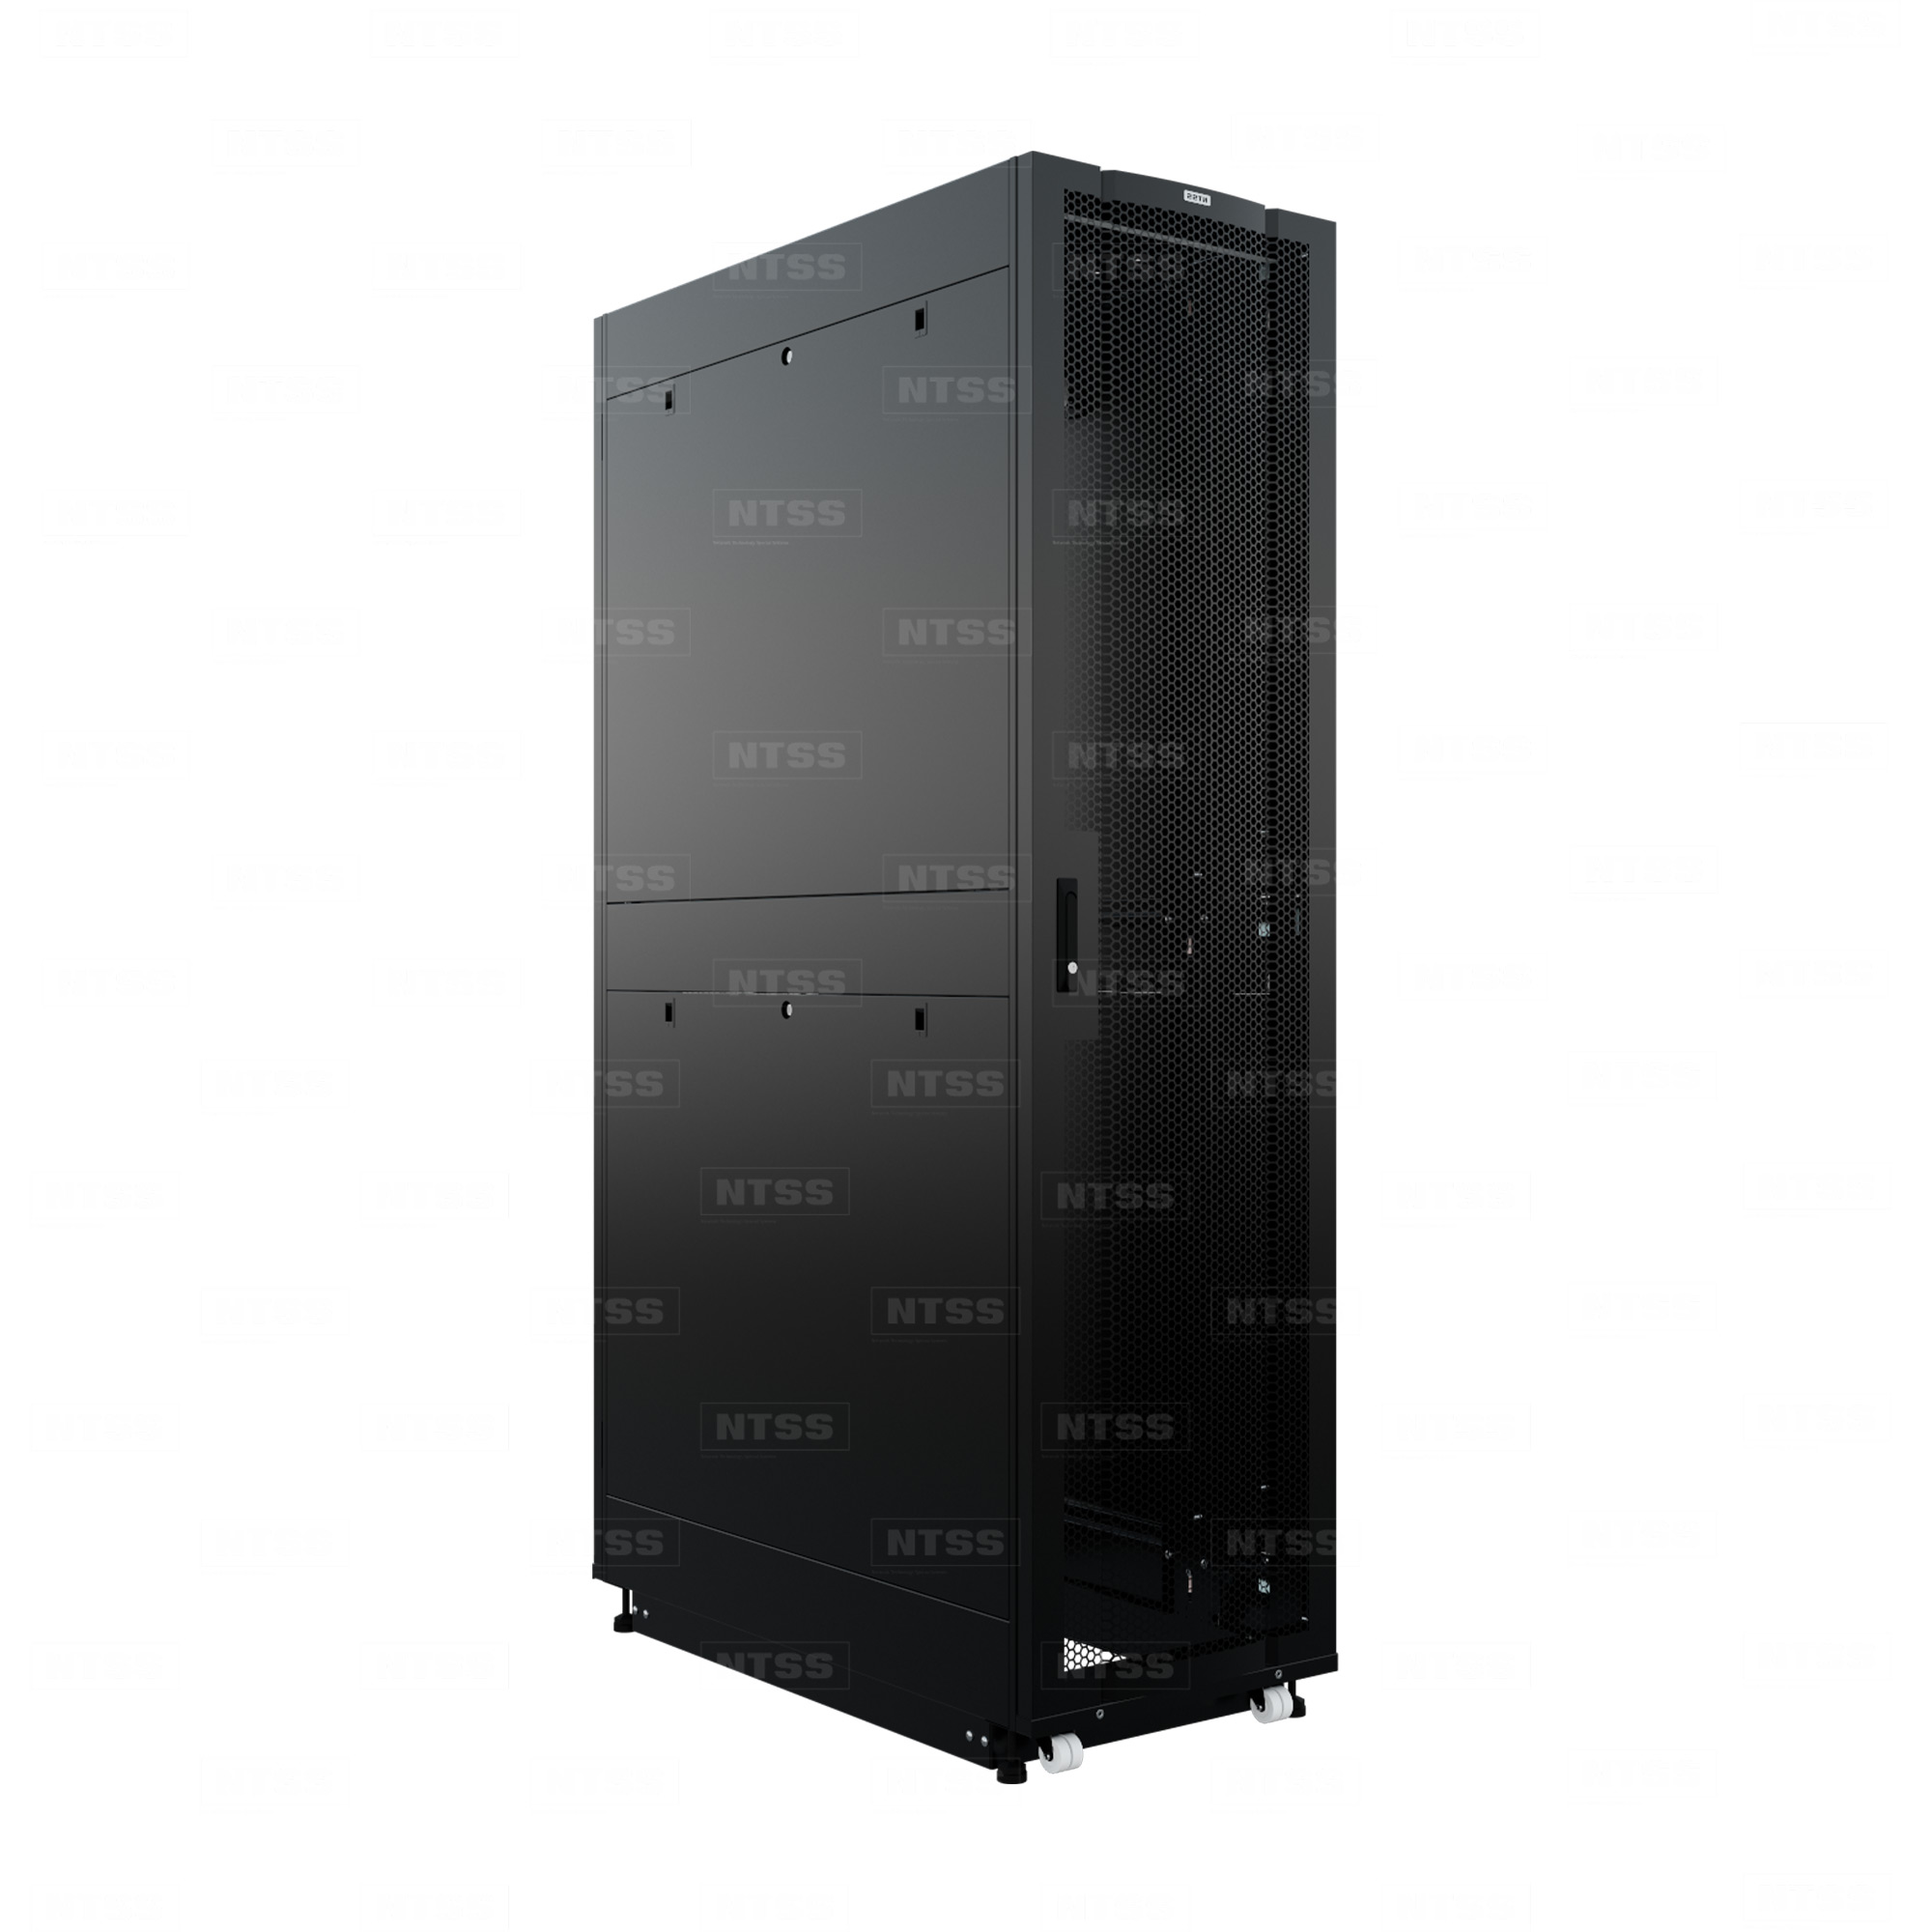 19" Напольный серверный шкаф NTSS ПРОЦОД PC МАСТЕР 47U 600х1200 мм, сварной в сборе, передняя дверь перфорация, задняя дверь распашная двойная перфорированная, боковые стенки, регулируемые опоры, ролики, черный RAL 9005